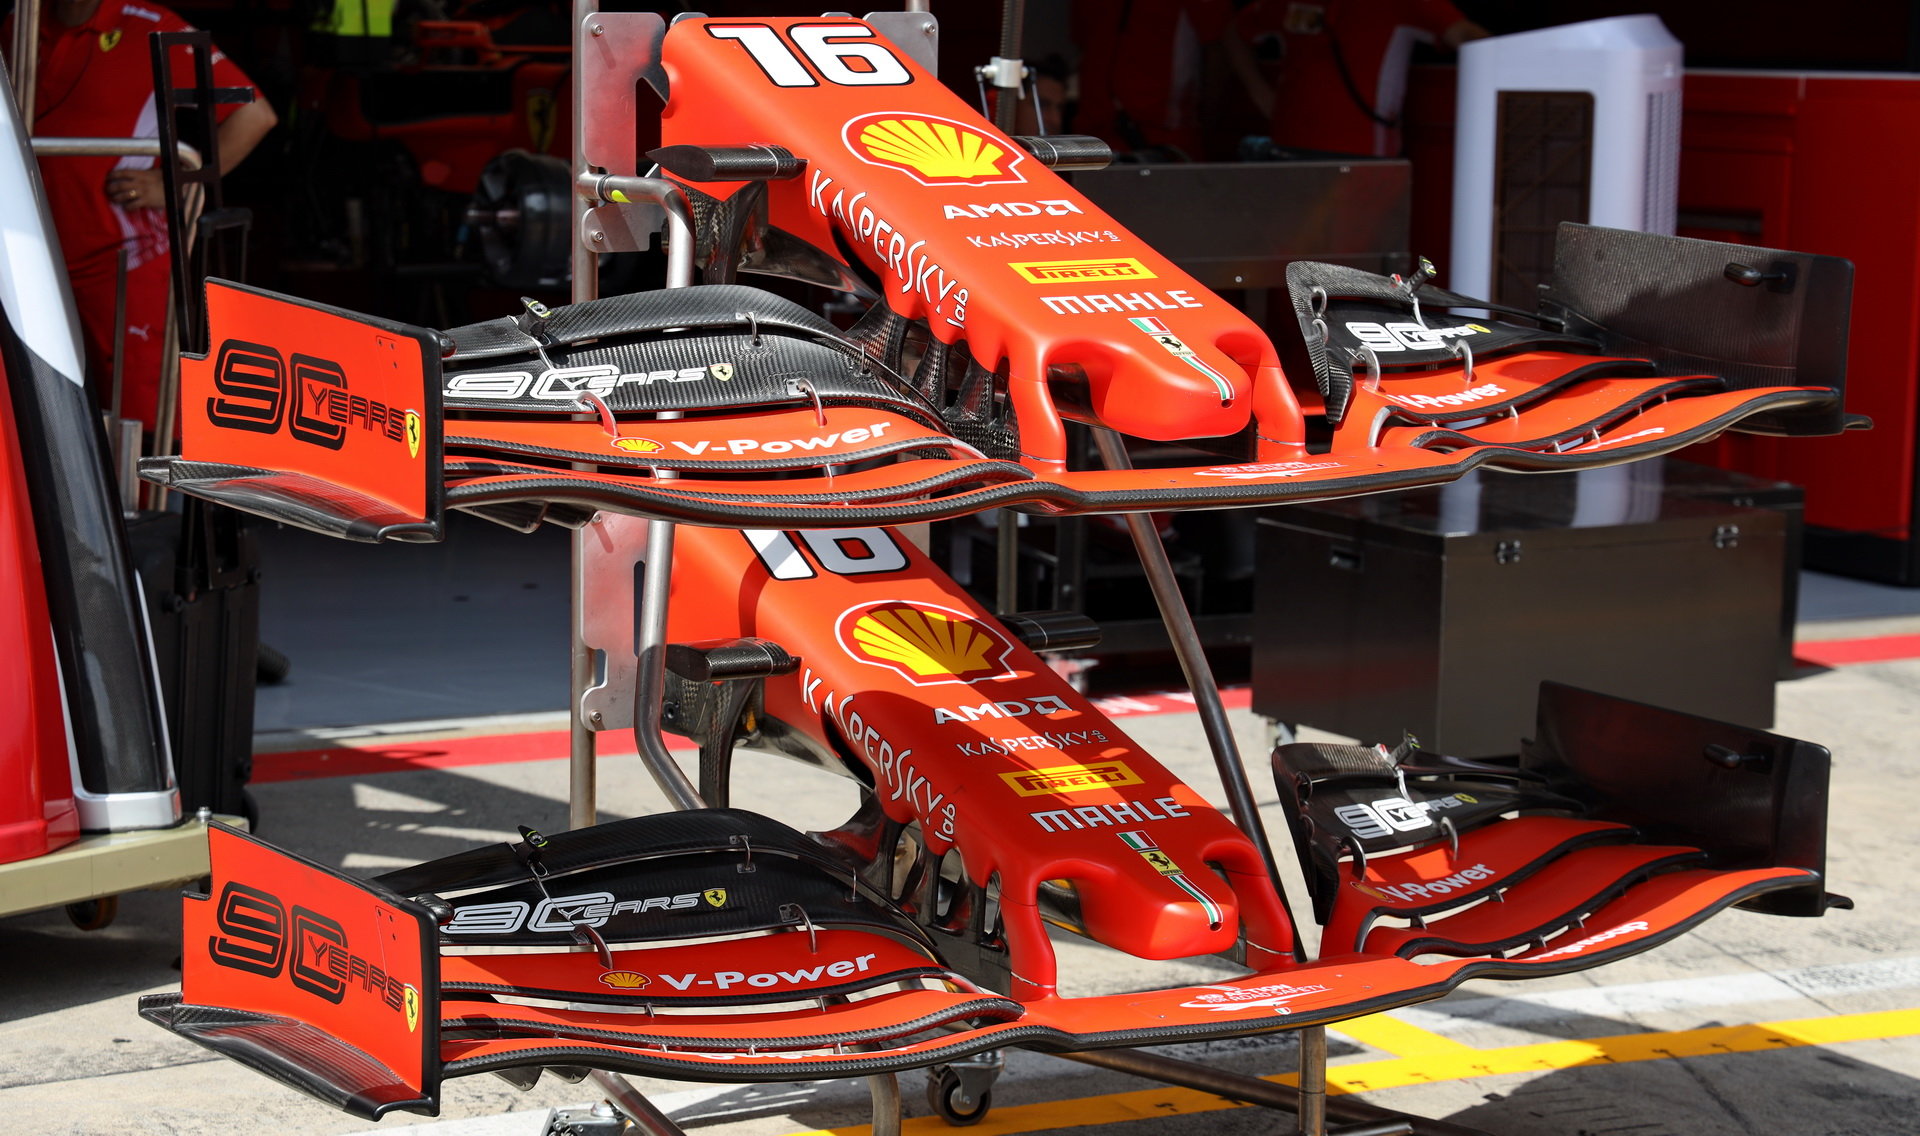 Ferrari přivezlo do Rakouska pár zajímavých novinek, které mu pomohly k vyšší konkurenceschopnosti